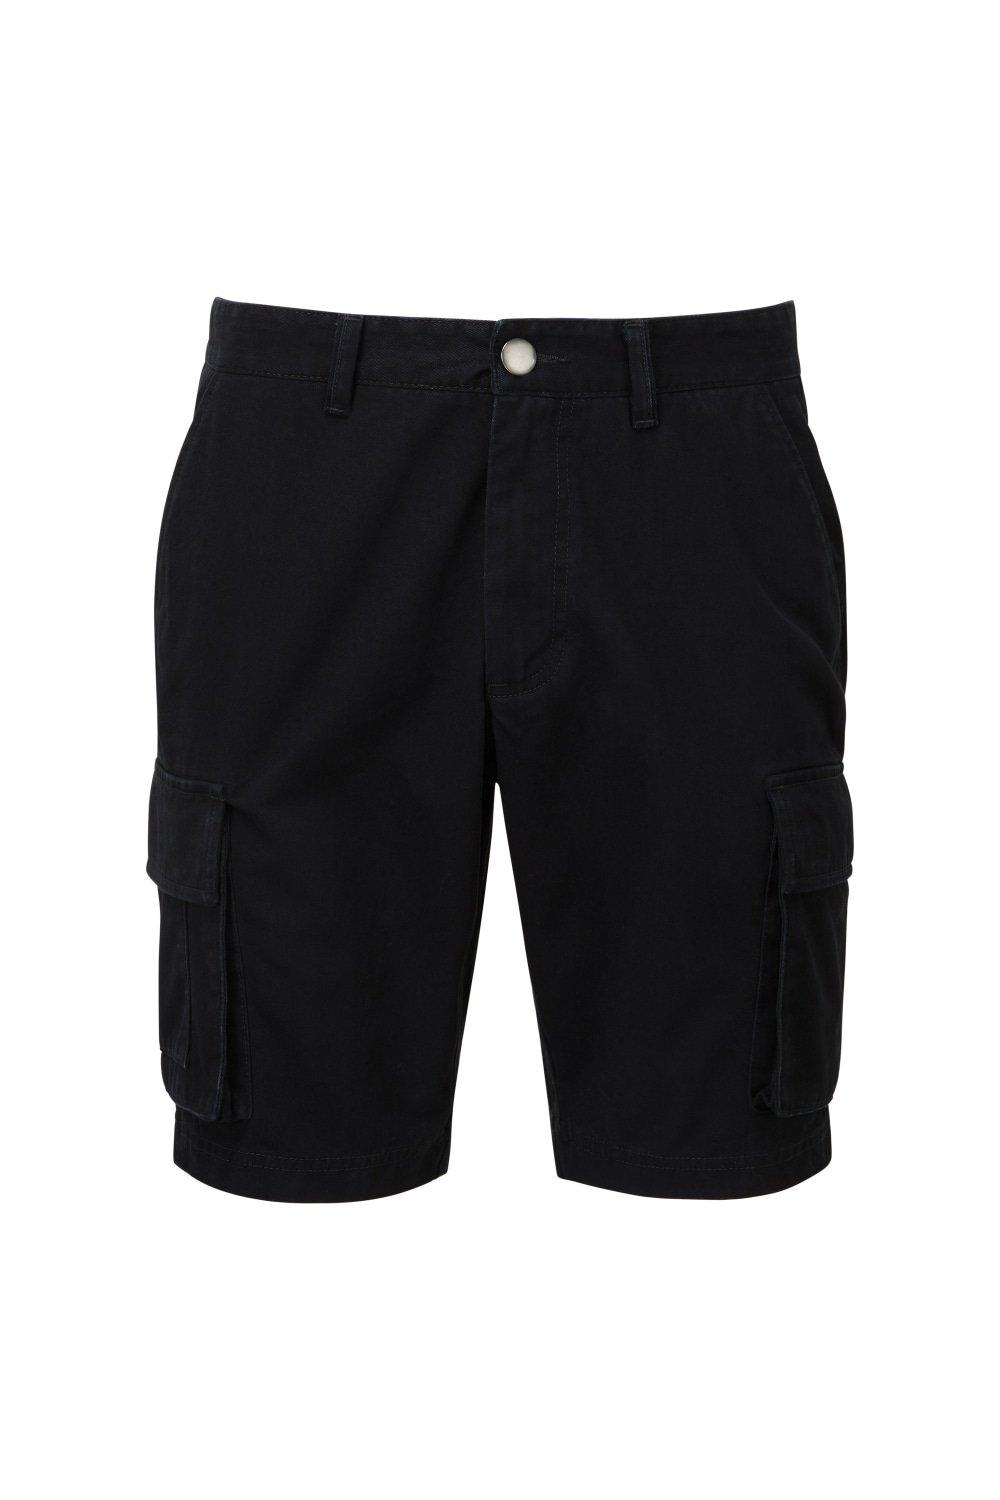 Грузовые шорты Asquith & Fox, черный шорты карго мужские однотонные свободные штаны с множеством карманов на пуговицах с широкими штанинами декор летние